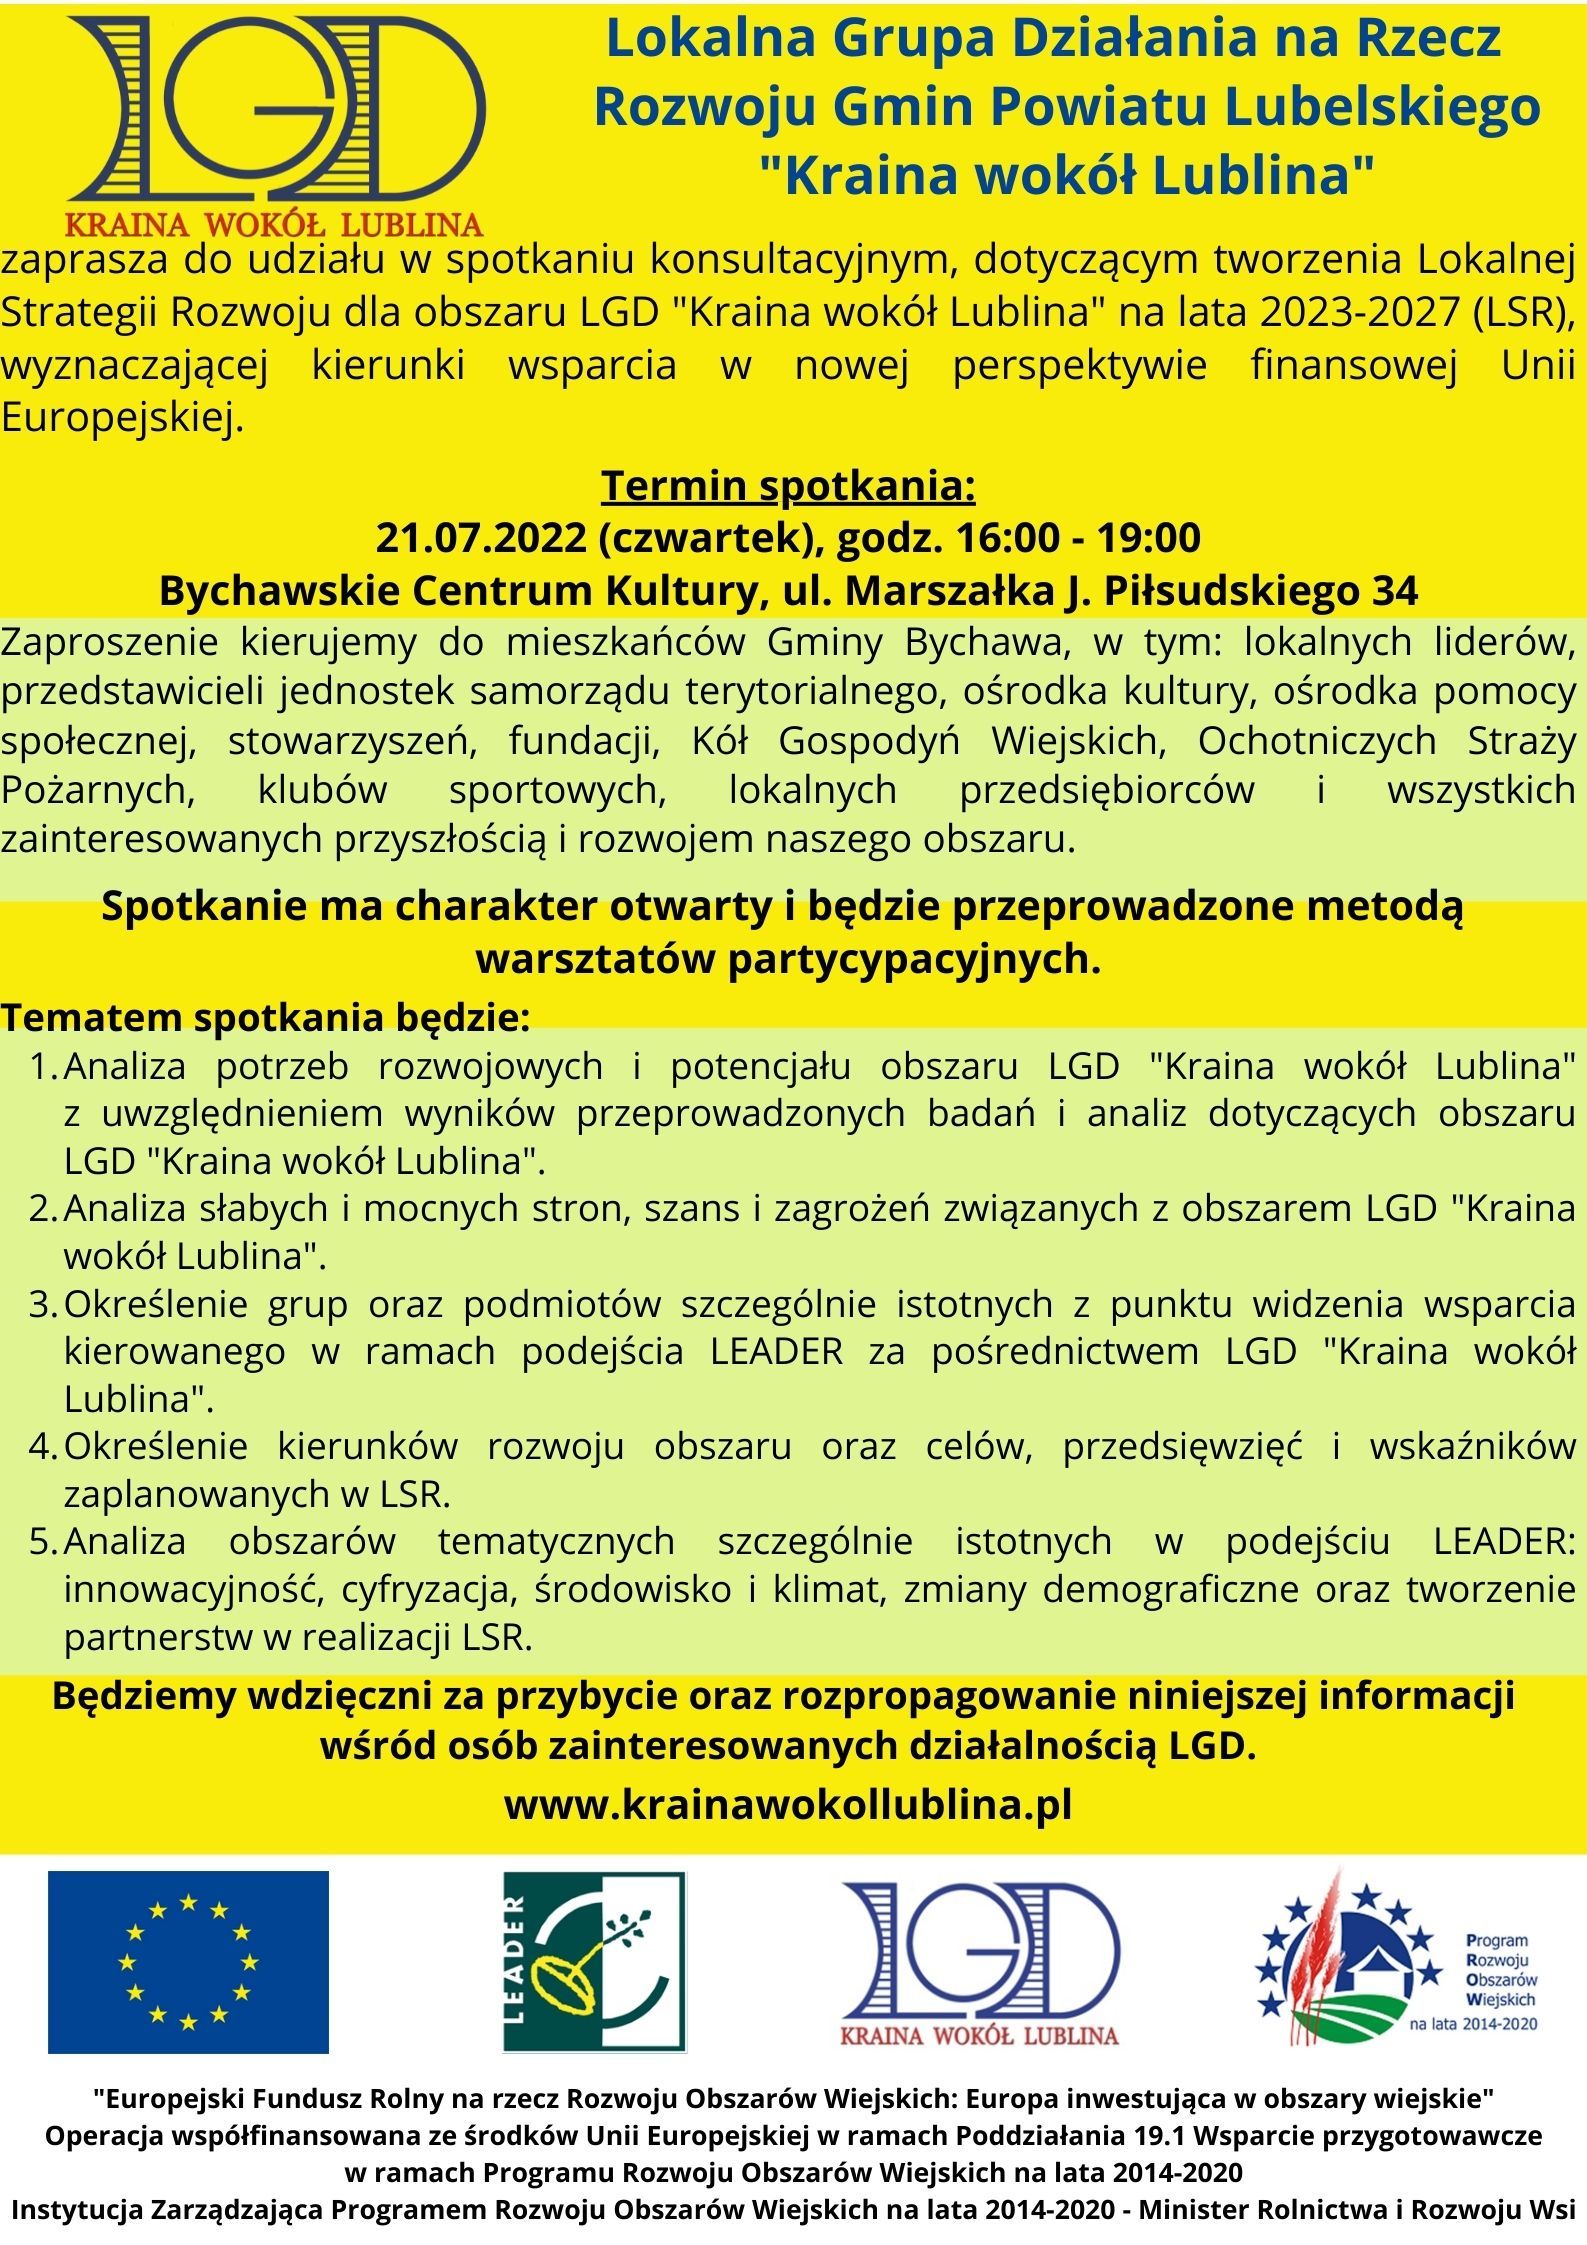 Zaproszenie na  spotkanie konsultacyjne, dotyczące tworzenia Lokalnej Strategii Rozwoju dla obszaru LGD „Kraina wokół Lublina” na lata 2023-2027 (LSR), wyznaczającej kierunki wsparcia w nowej perspektywie finansowej Unii Europejskiej